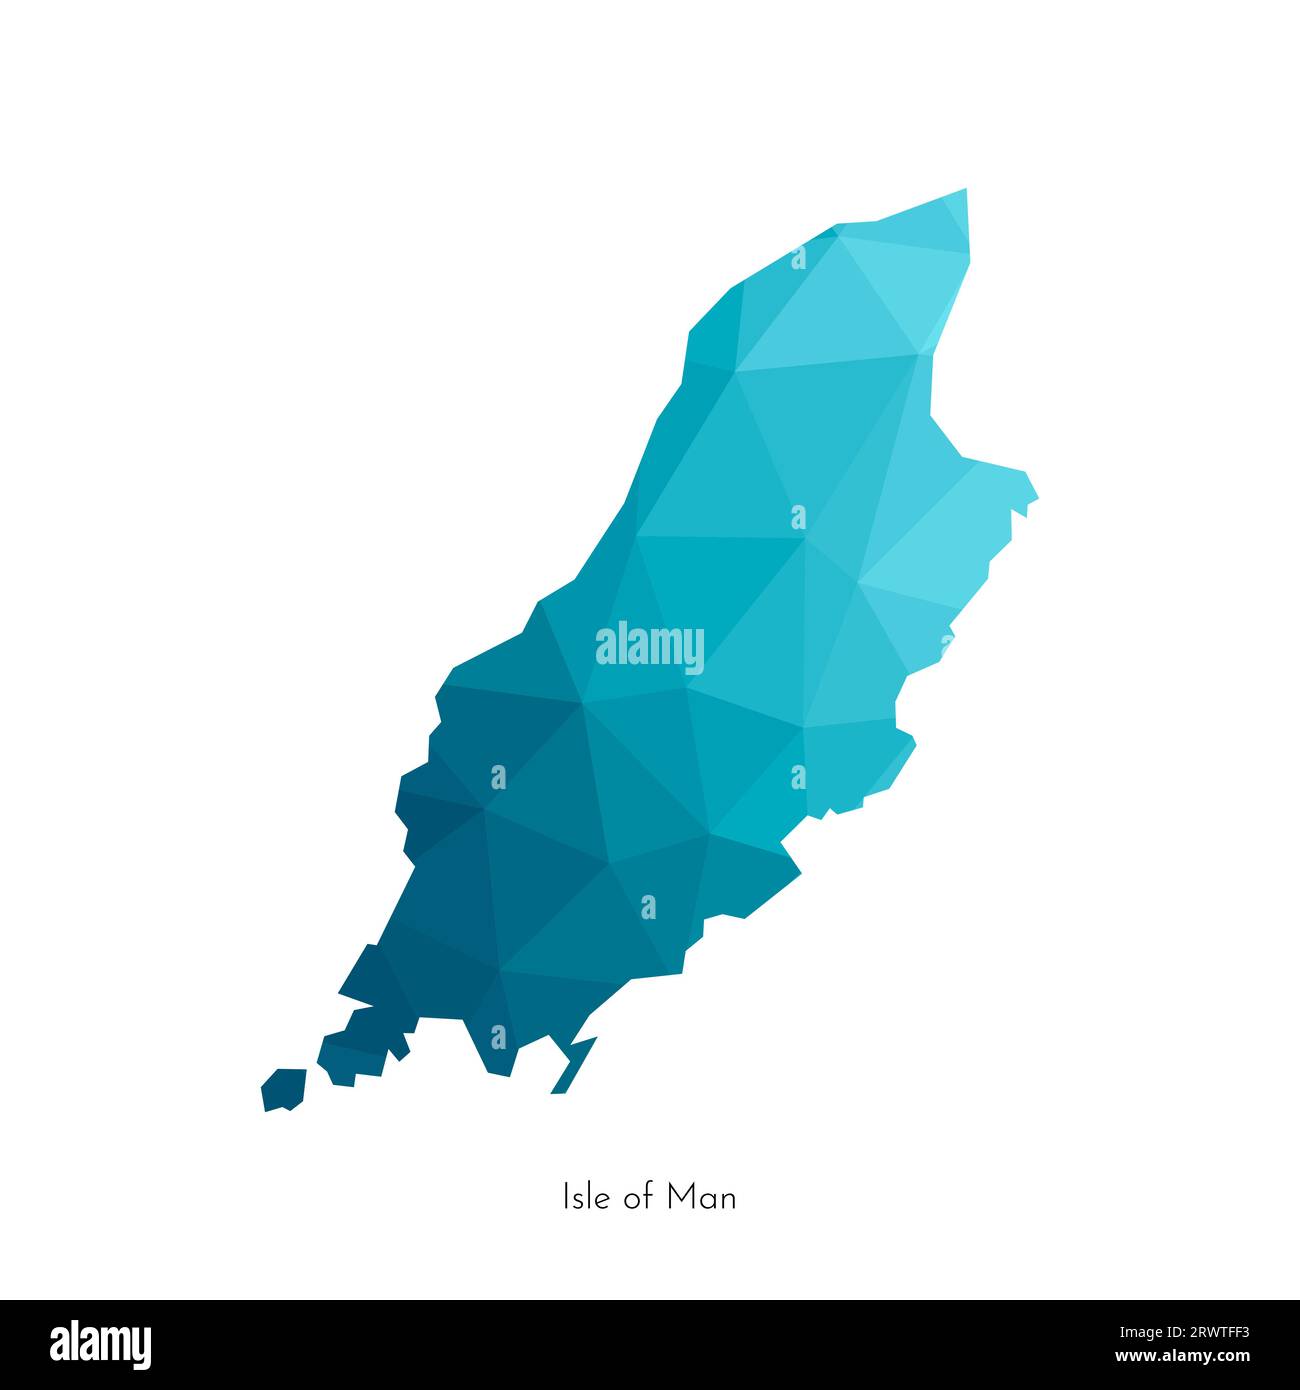 Illustrazione piatta isolata vettoriale con mappa semplificata in poli basso dell'Isola di Man (Regno Unito). Forma geometrica blu poligonale dell'isola (Mann, autogoverno Bri Illustrazione Vettoriale